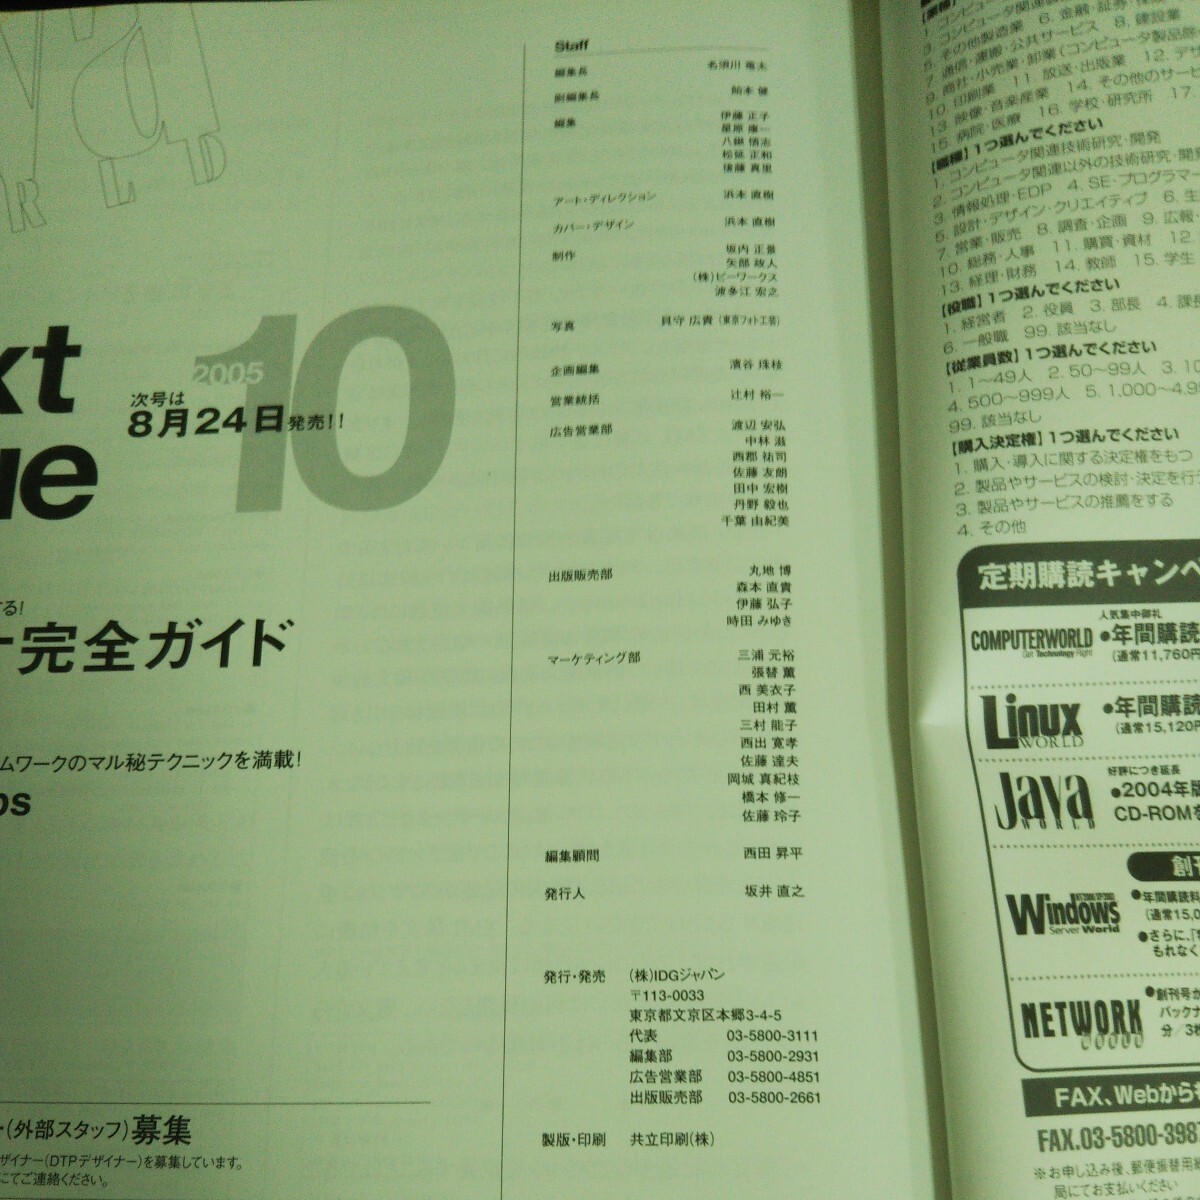 f-352 ежемесячный Java world 9 месяц номер соус * код. считывание person ... акционерное общество IDG Japan 2005 год выпуск *14